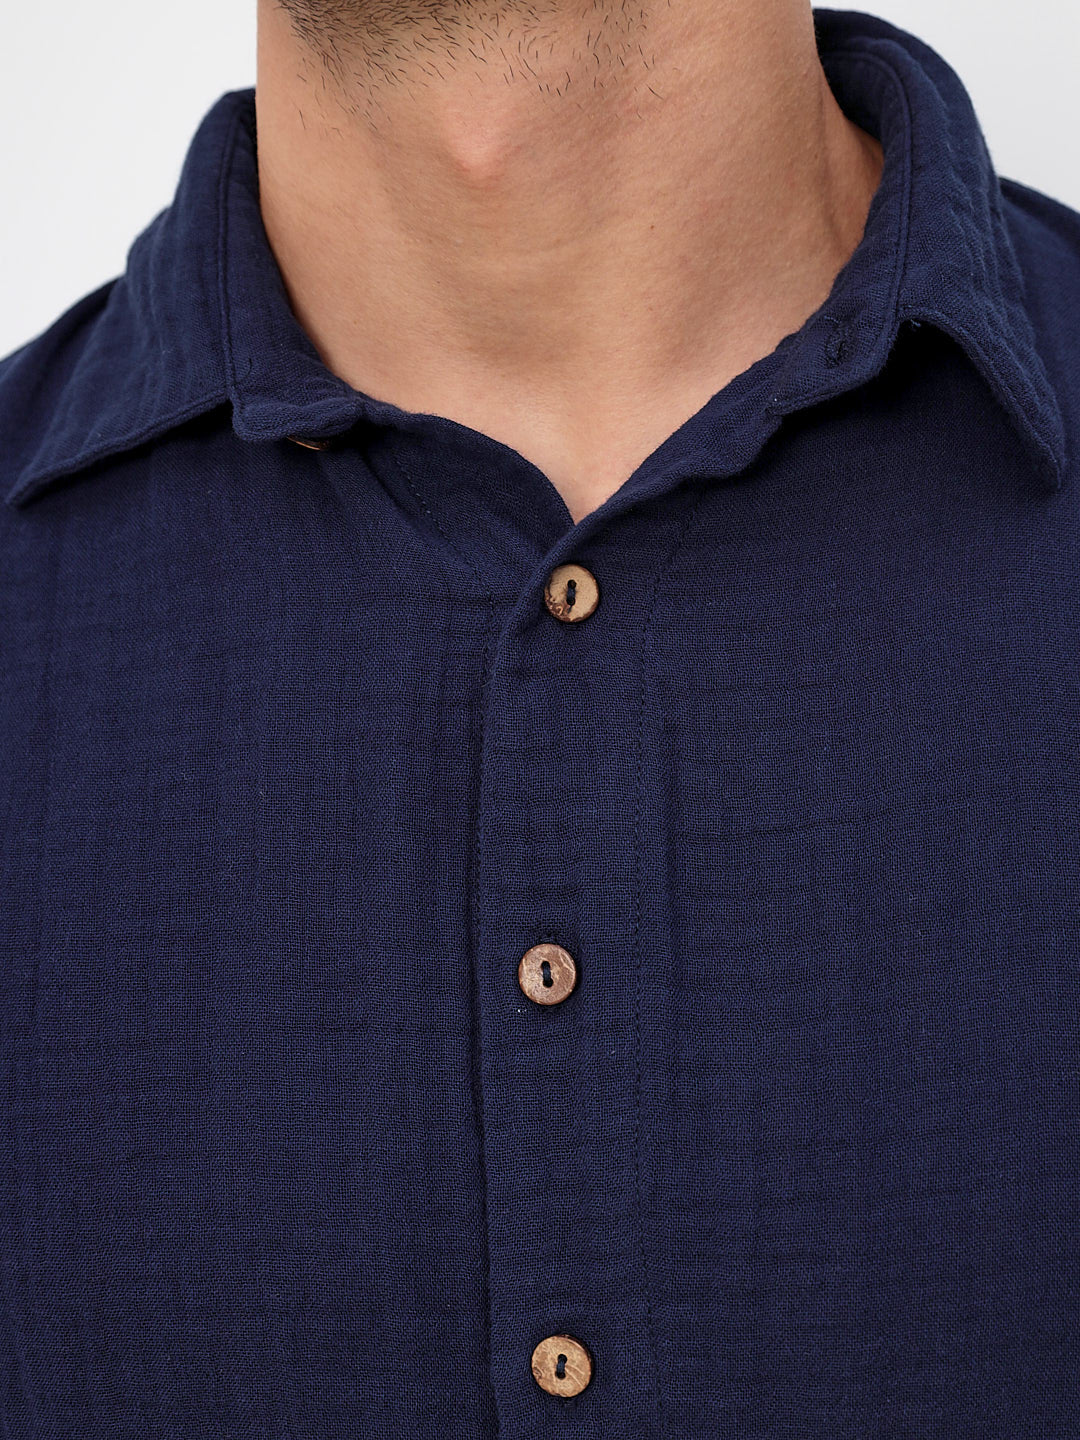 Herren Sommer Mode Hemd aus lässige Musselin Freizeit LMS-6484 Navy Marinenblau